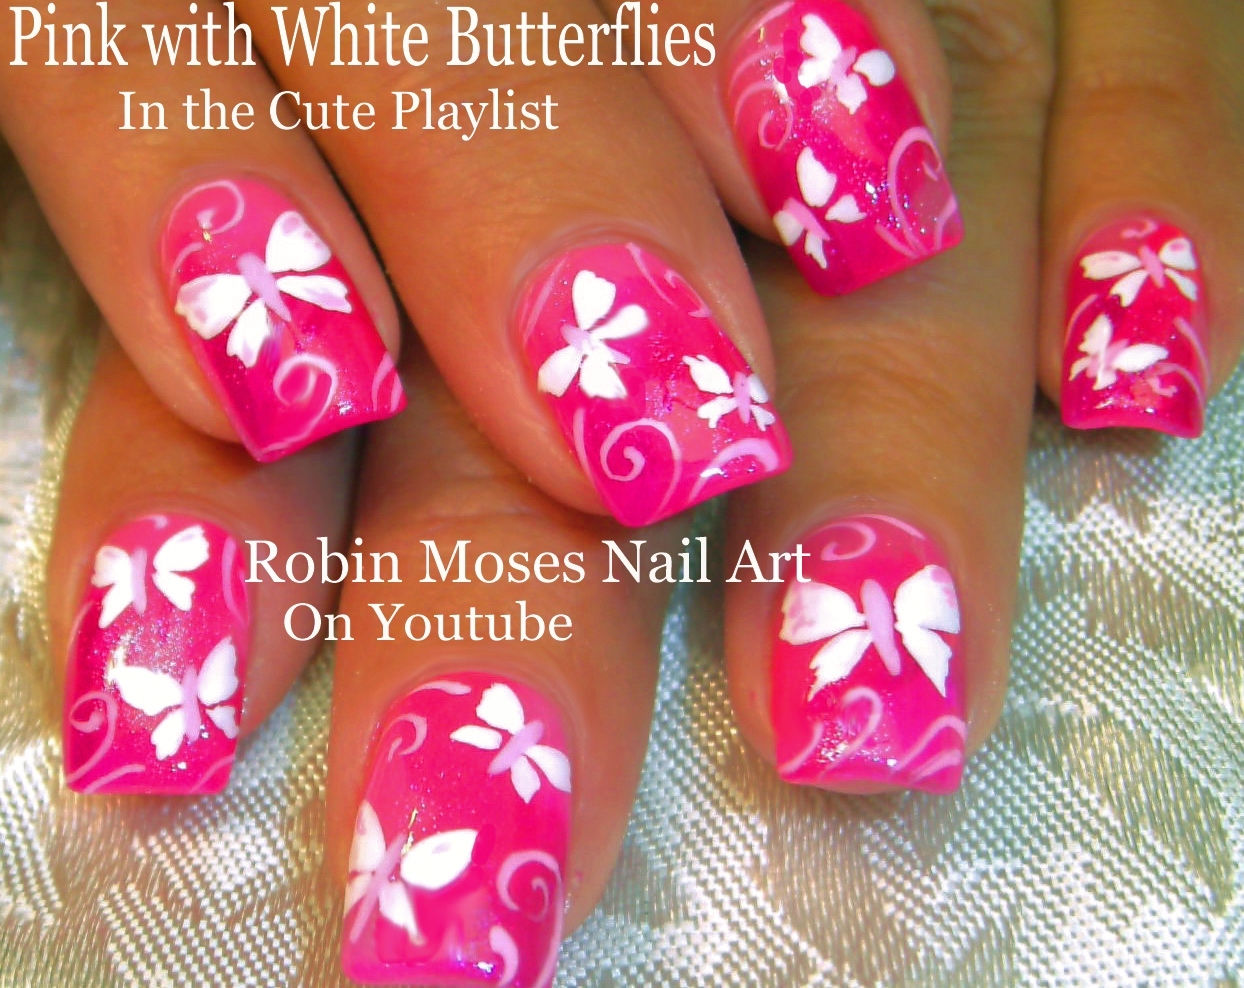 8. Cute Butterfly Nail Art Stencils - Sally Beauty - wide 7